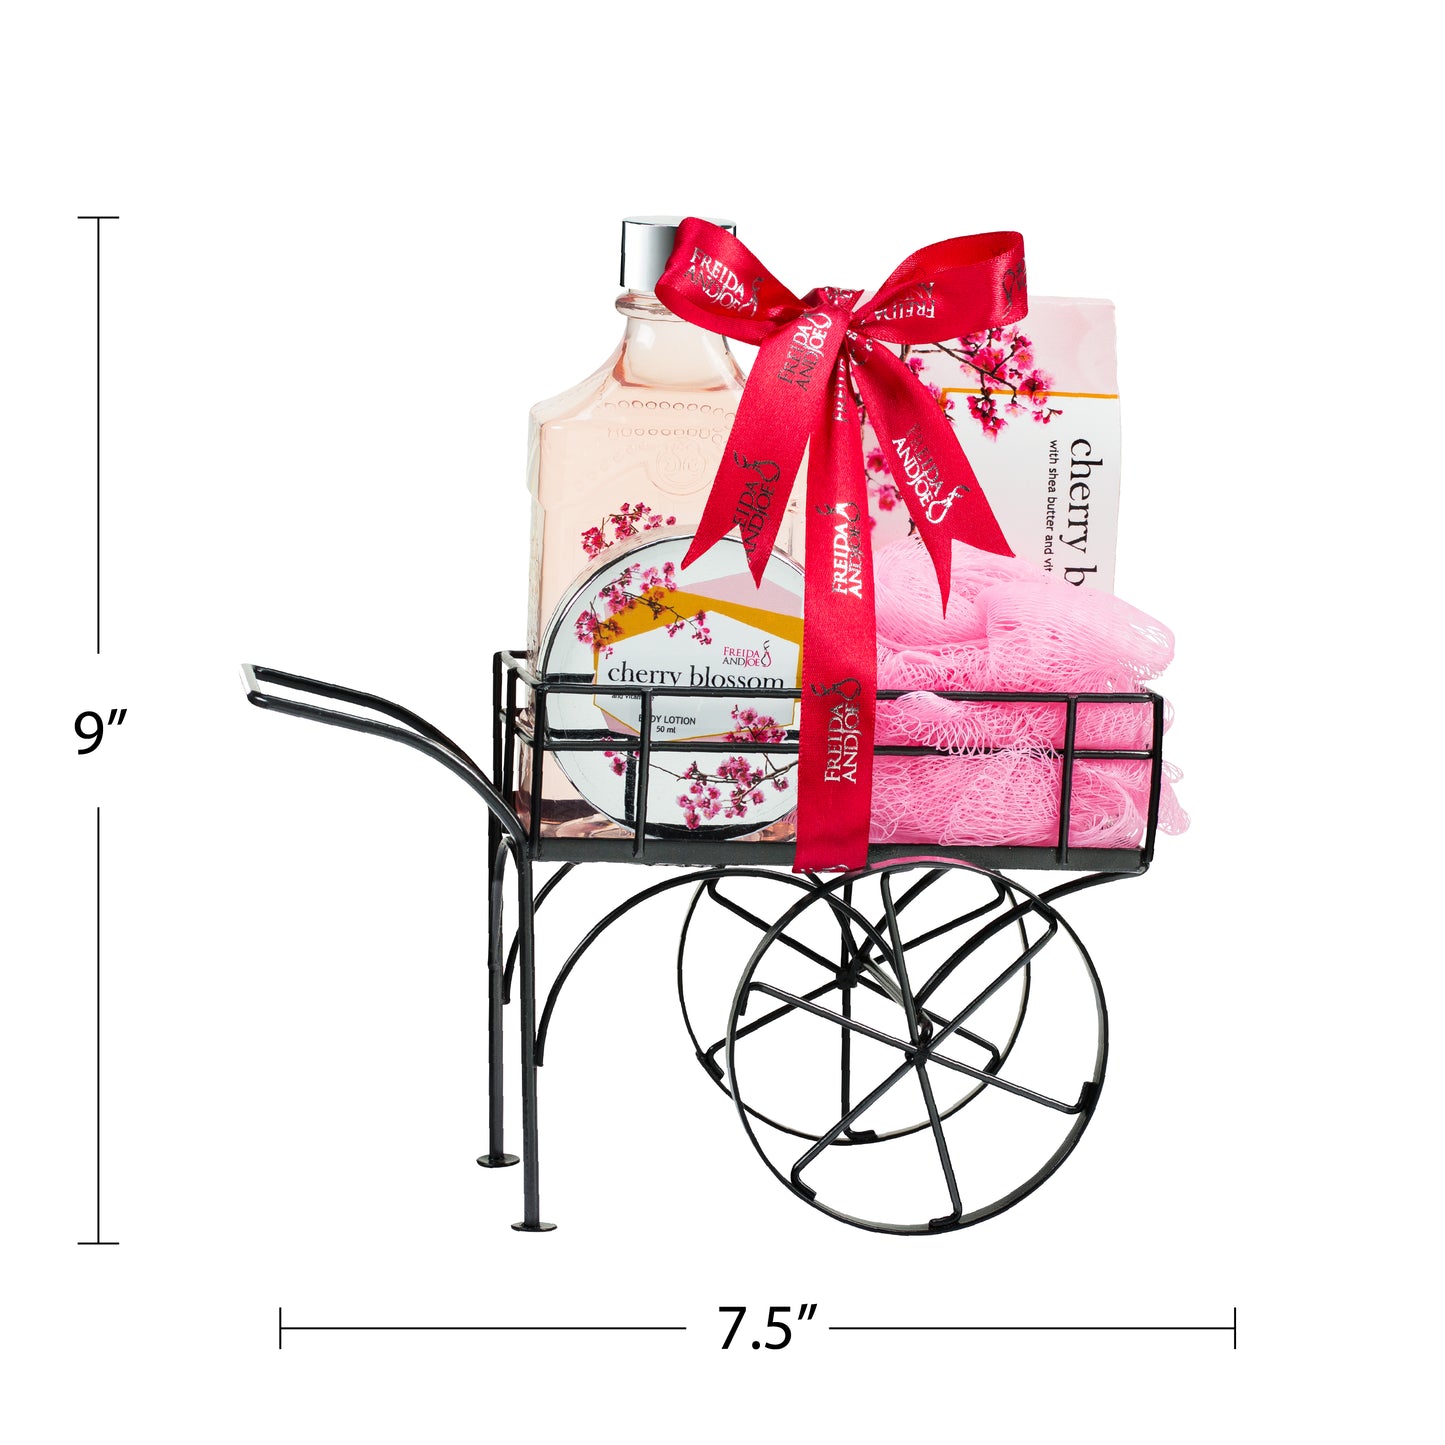 Cherry Blossom Bath & Body Spa Gift Set in Wheelbarrow Caddie